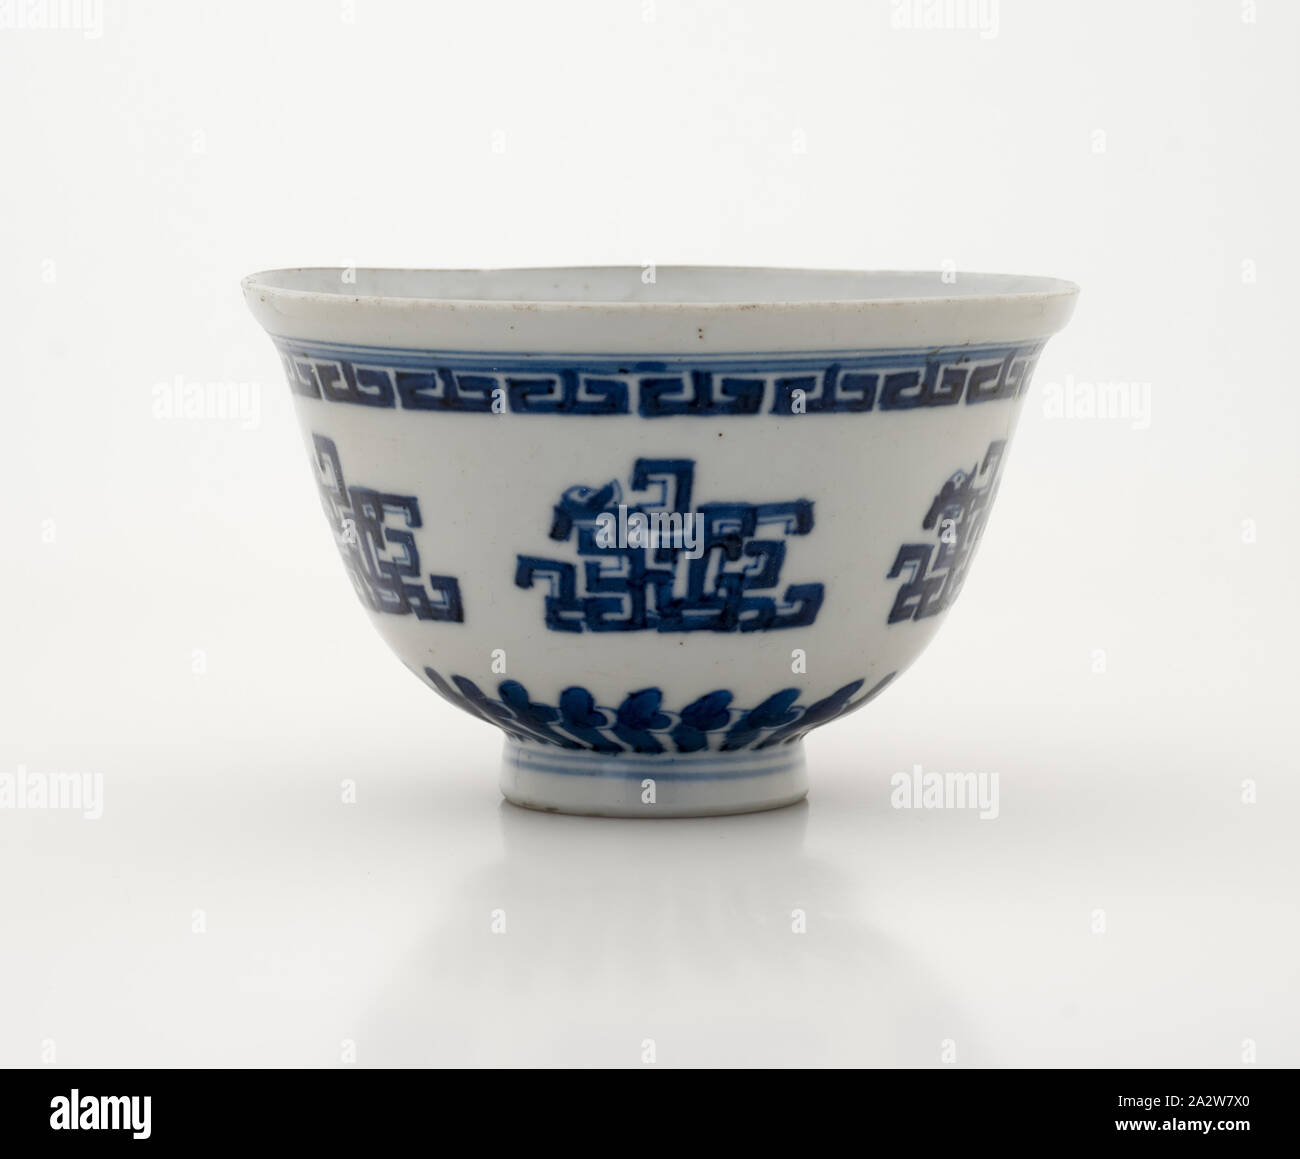 bowl, white glaze on porcelain, 4-3/8 in., Asian Art Stock Photo